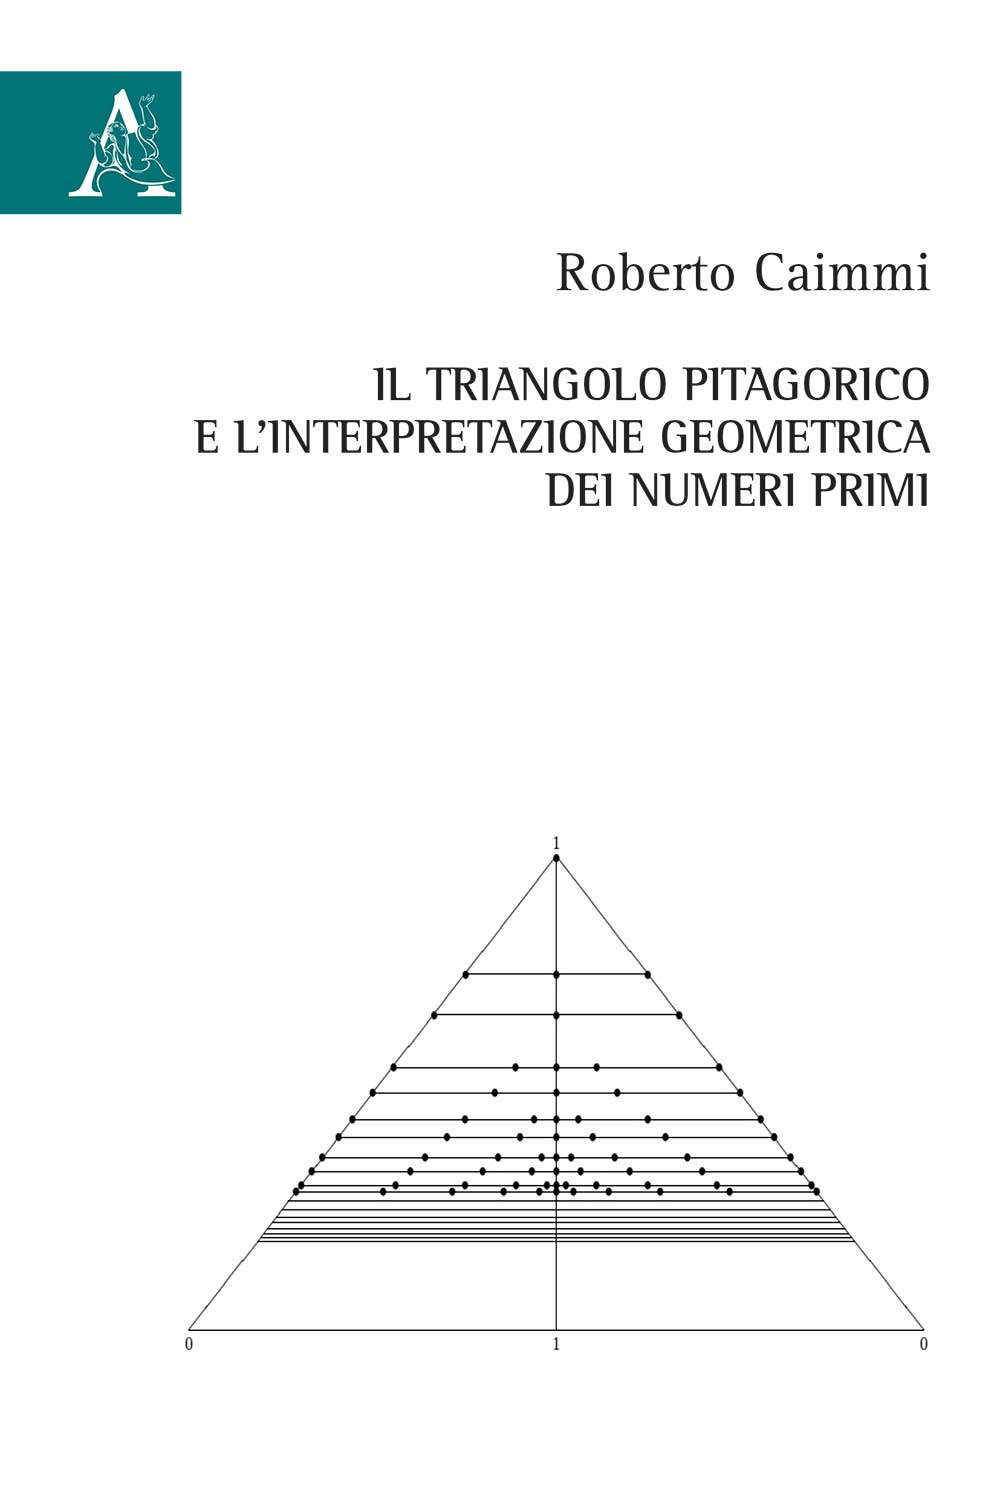 Il triangolo pitagorico e l'interpretazione geometrica dei numeri primi